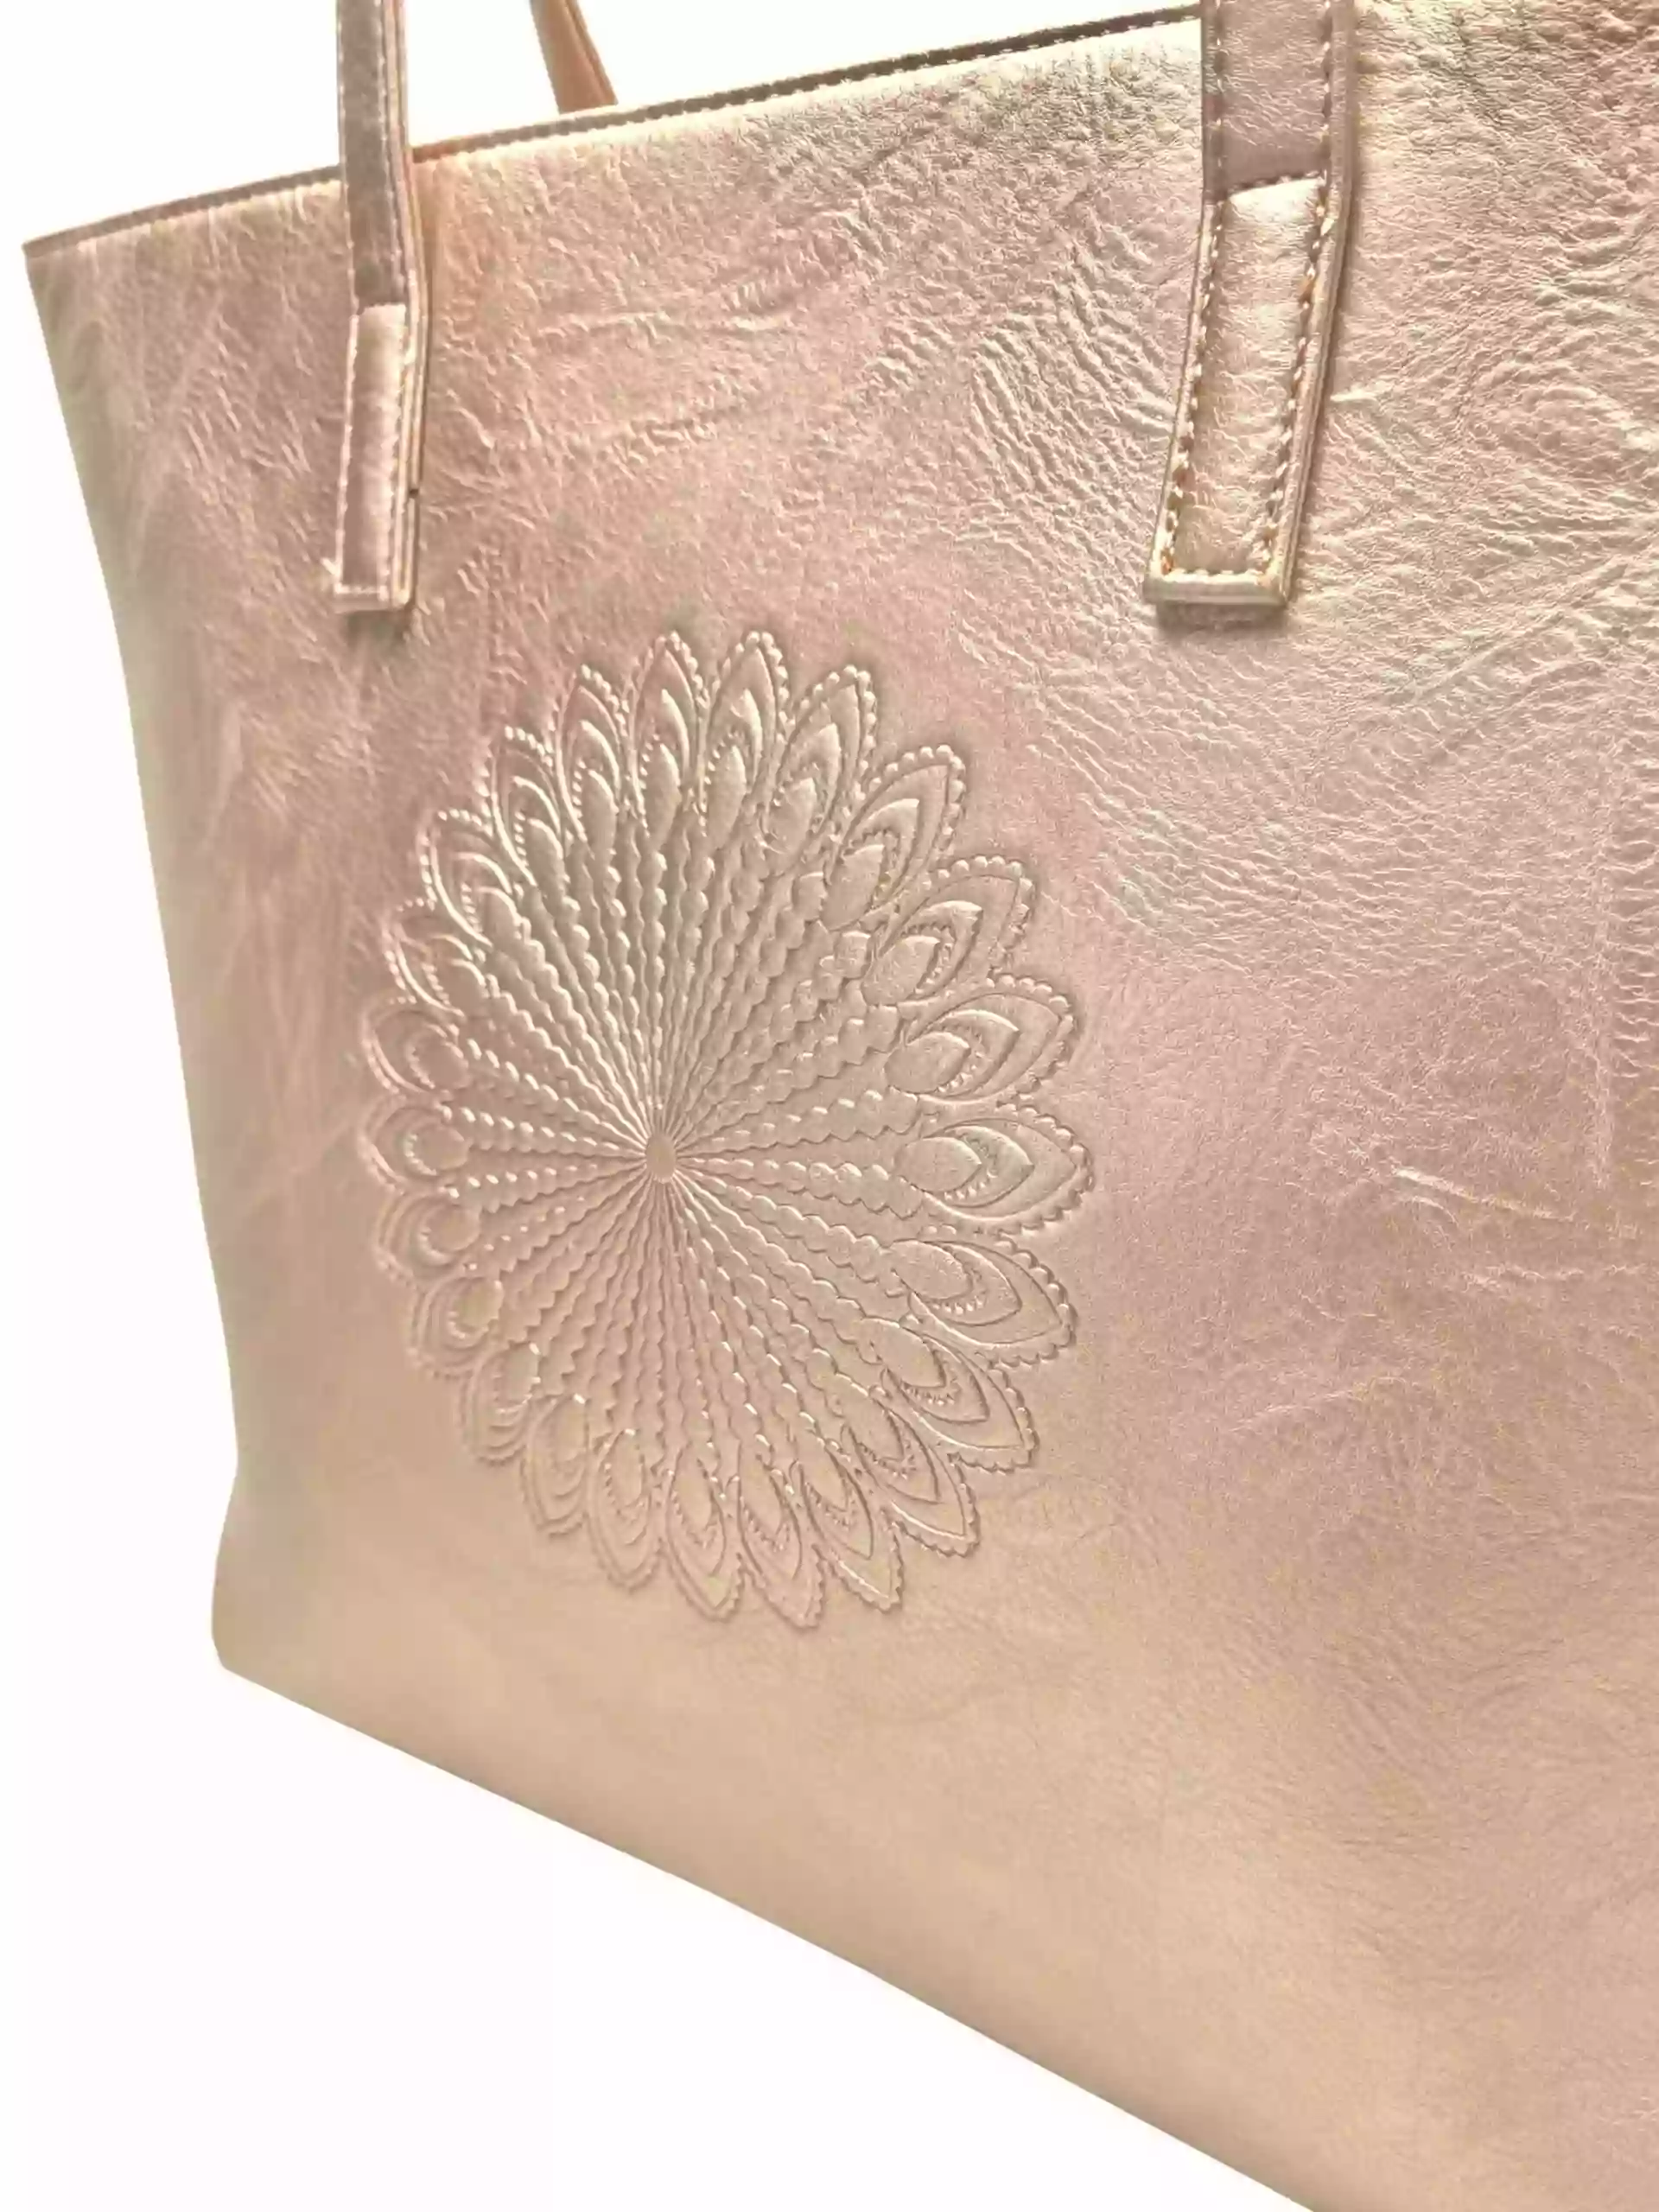 Zlatá dámská kabelka přes rameno se vzorem, Tapple, H17409N, detail zadní strany kabelky